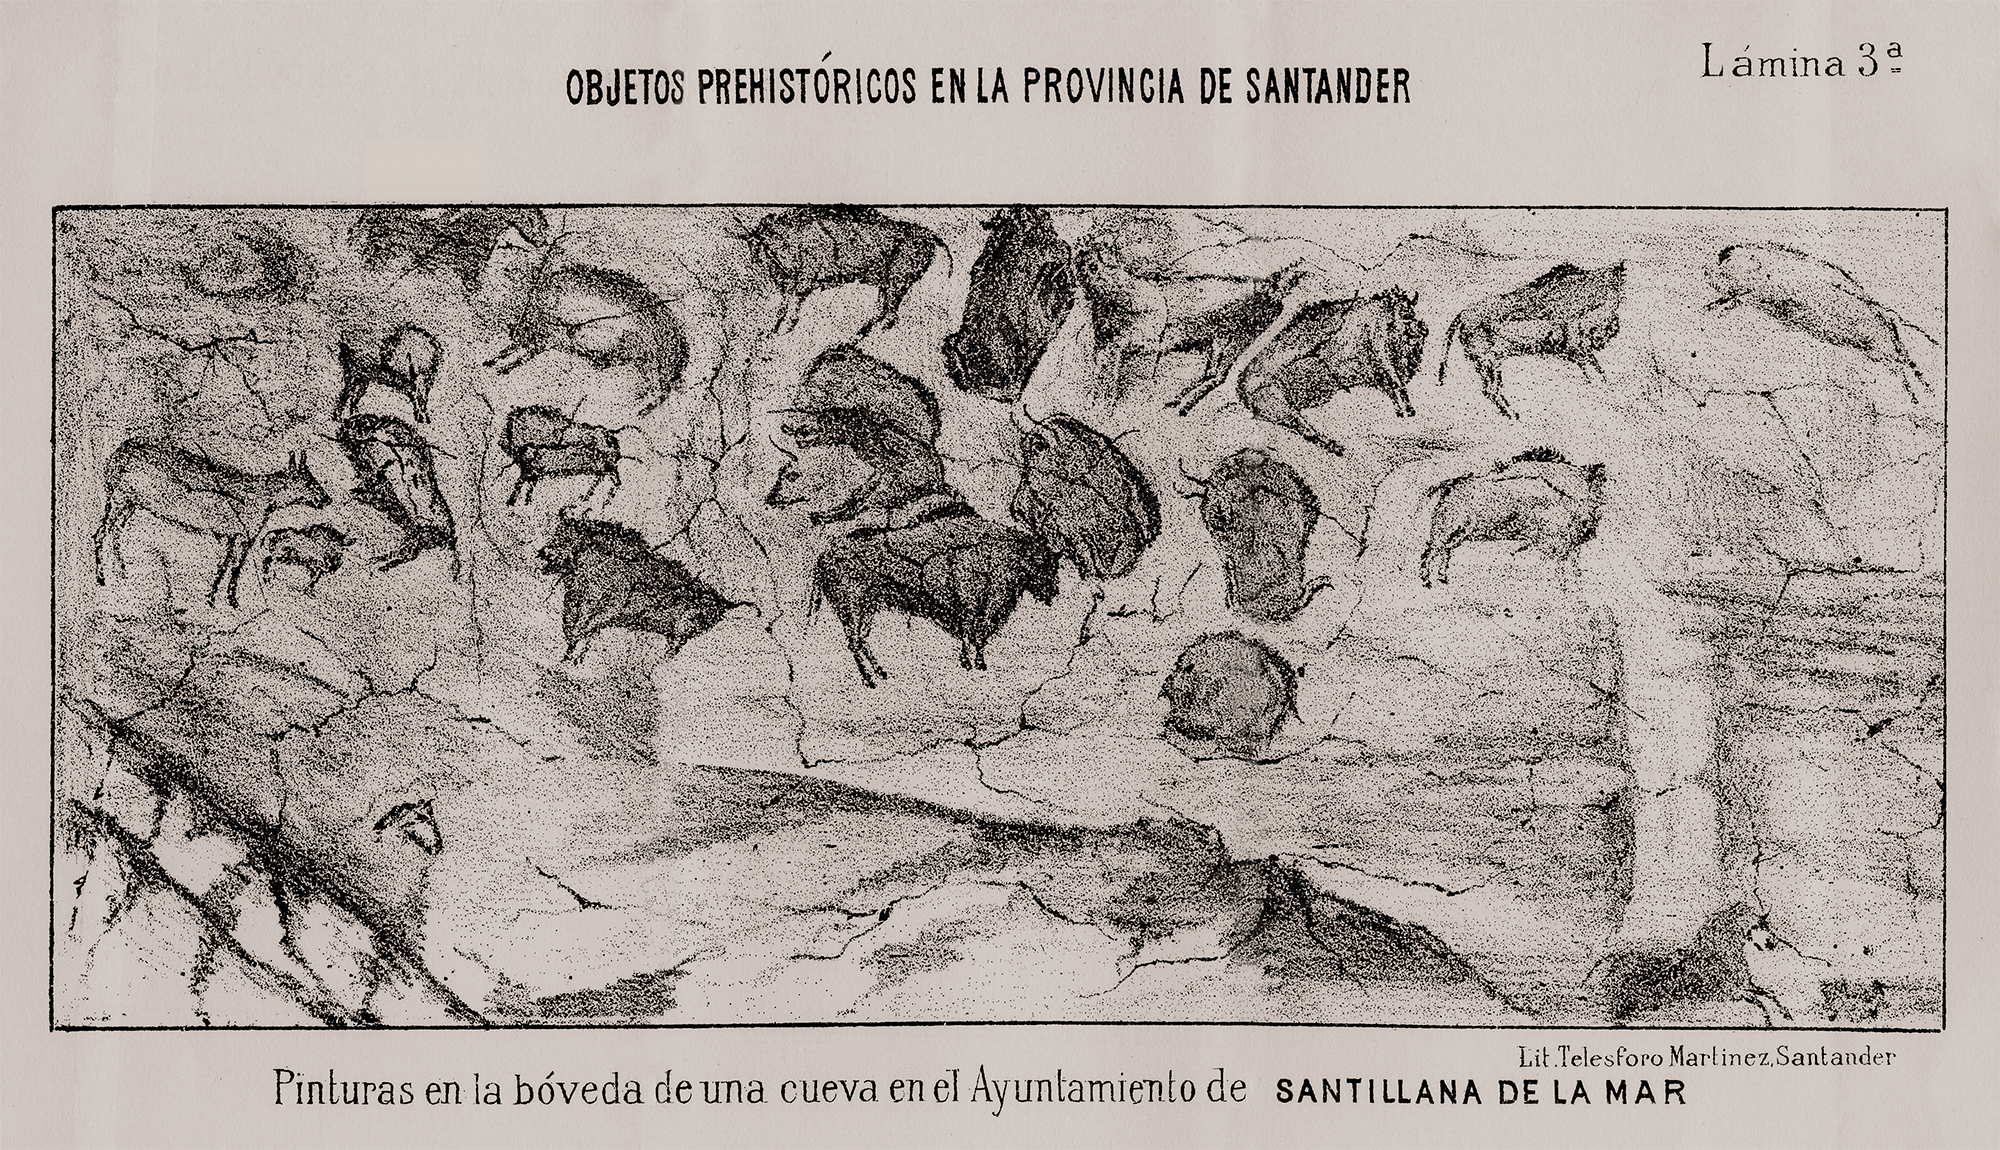 The Cave of Altamira Spain Breves apuntes sobre algunos objetos prehistóricos de la provincia de Santander